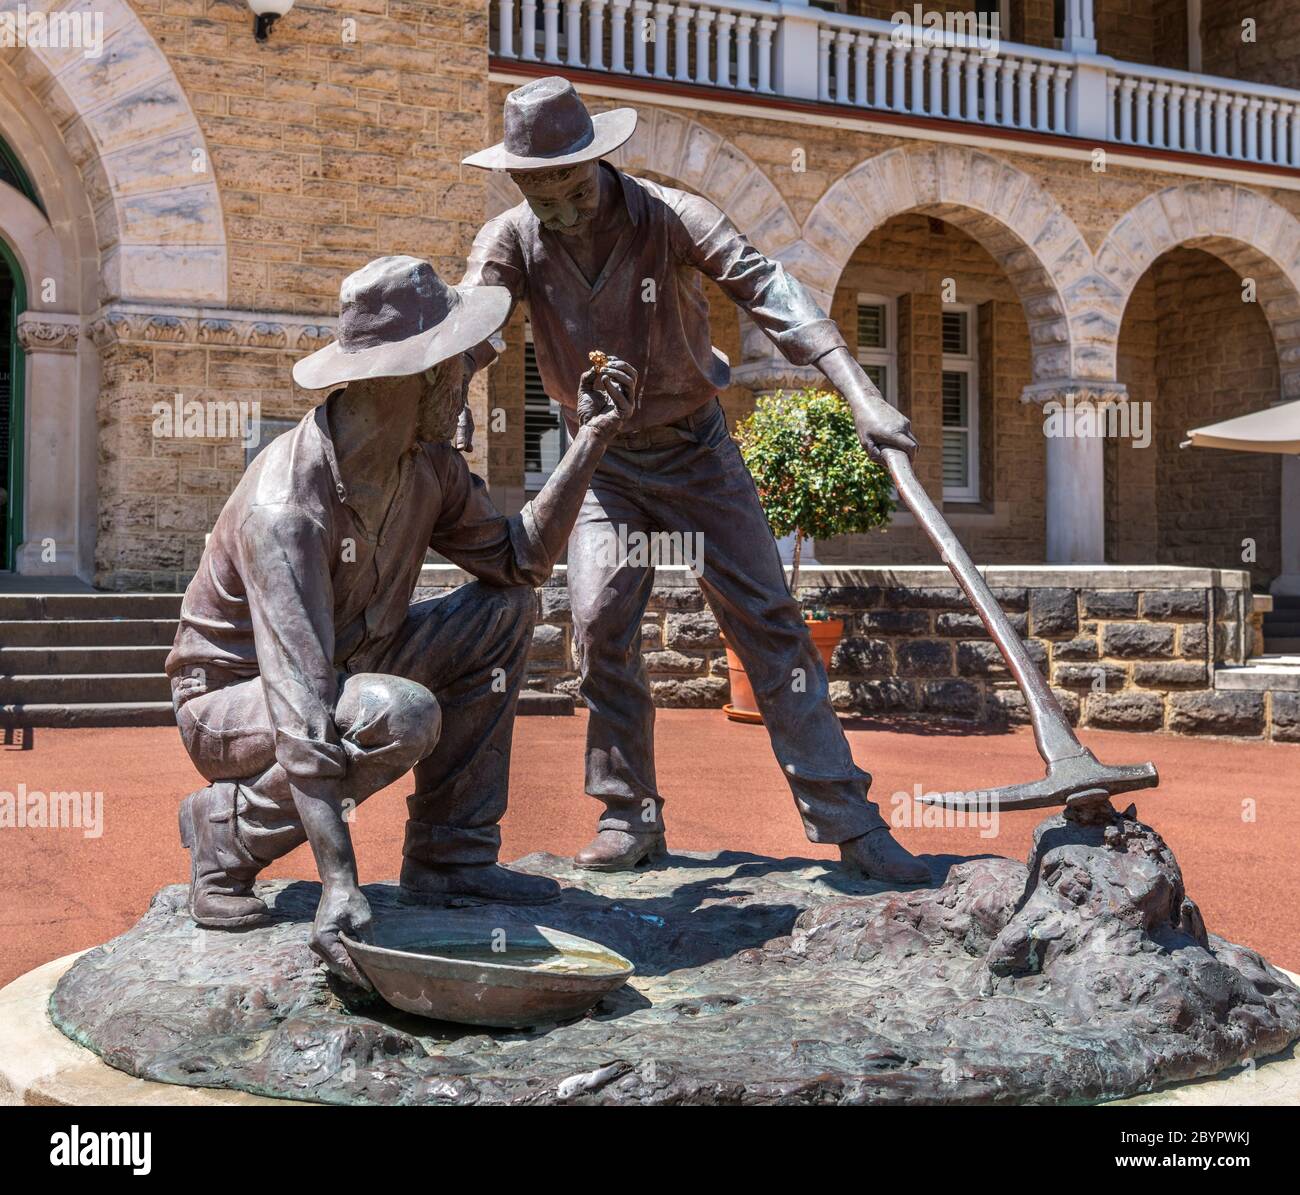 Escultura de buscadores de oro en las afueras de la Casa de la Moneda de Perth, Perth, Australia Occidental, Australia. Foto de stock